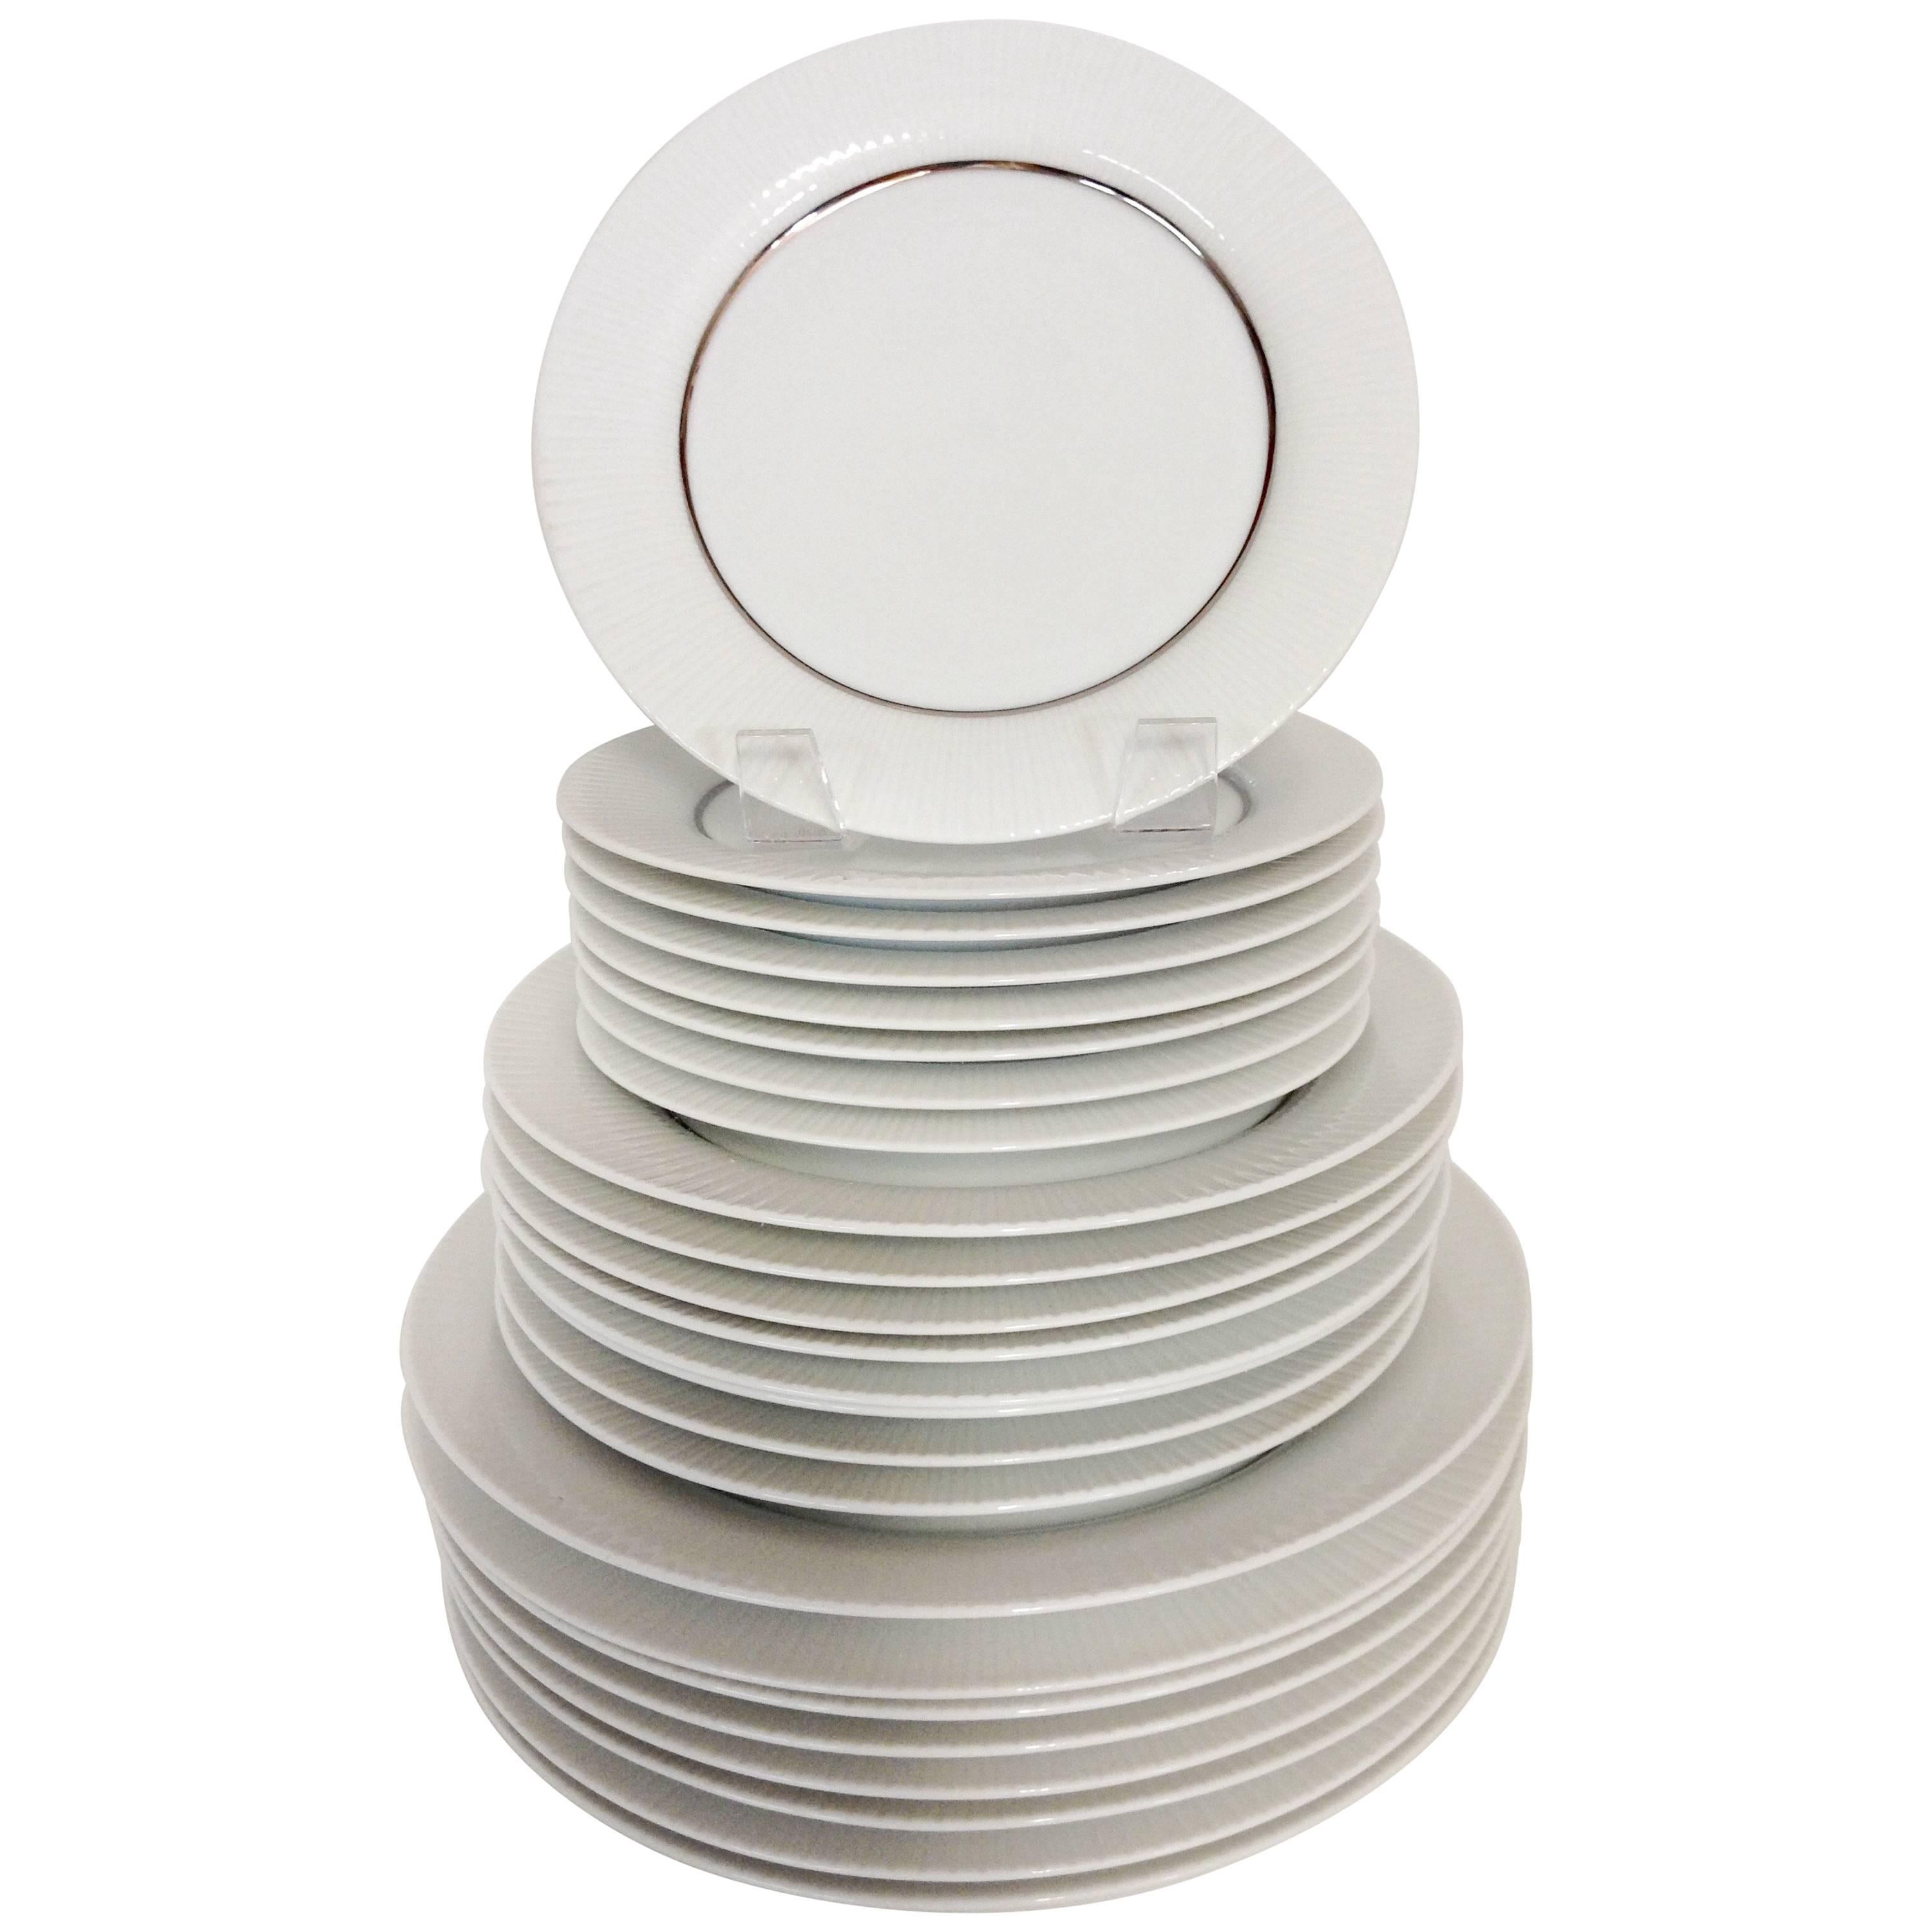 1960'S Porcelain Dinnerware "Modulation", Tappio Wikalla for Rosenthal S/24